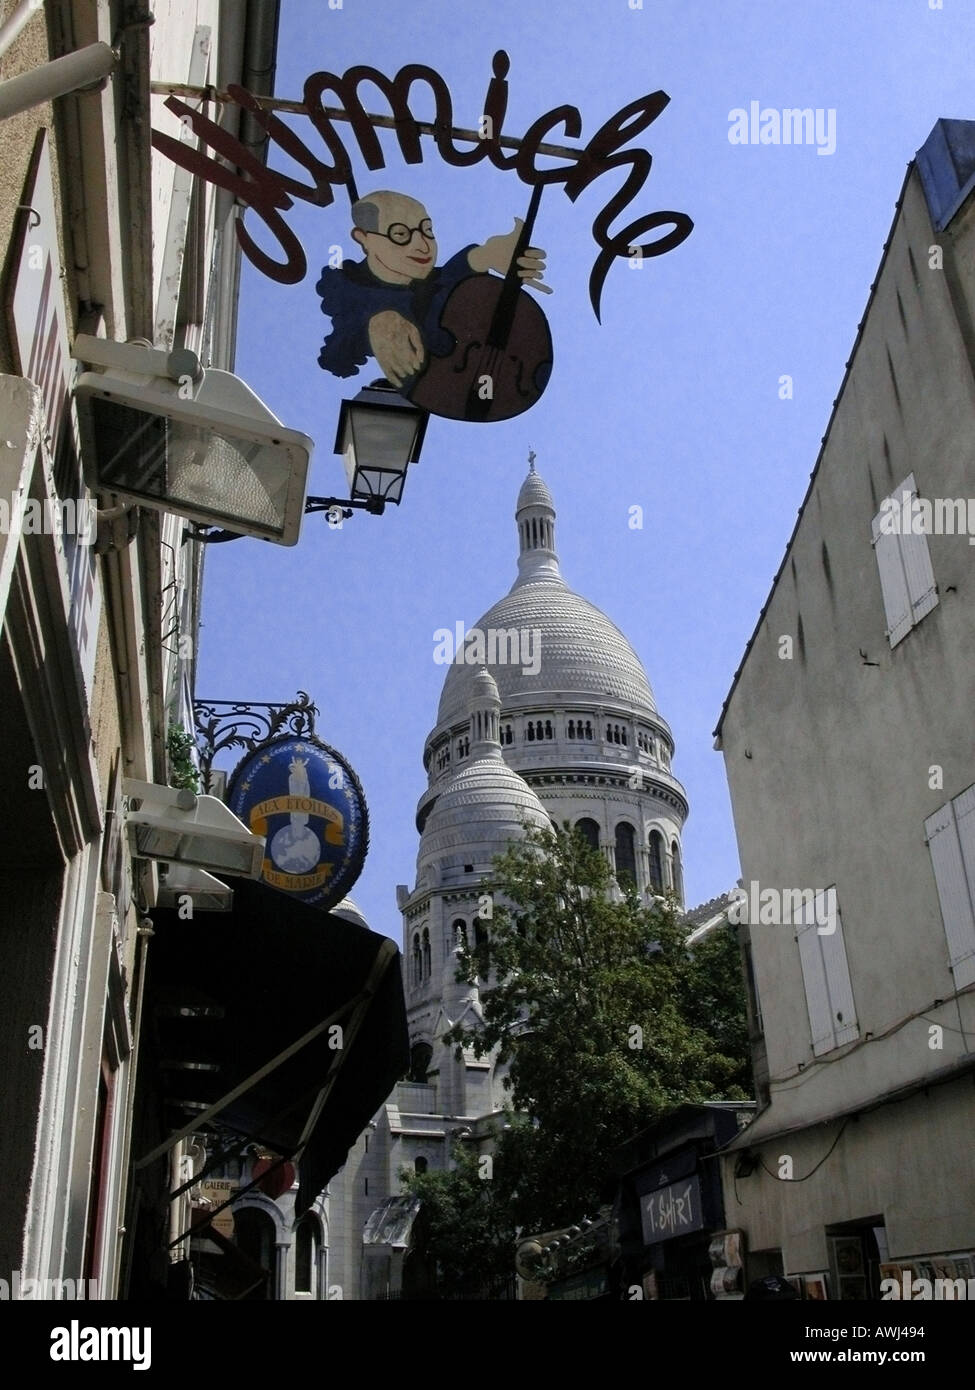 france ile de france paris montmartre shop sign mimiche and view of cupola of Sacre Coeur Stock Photo